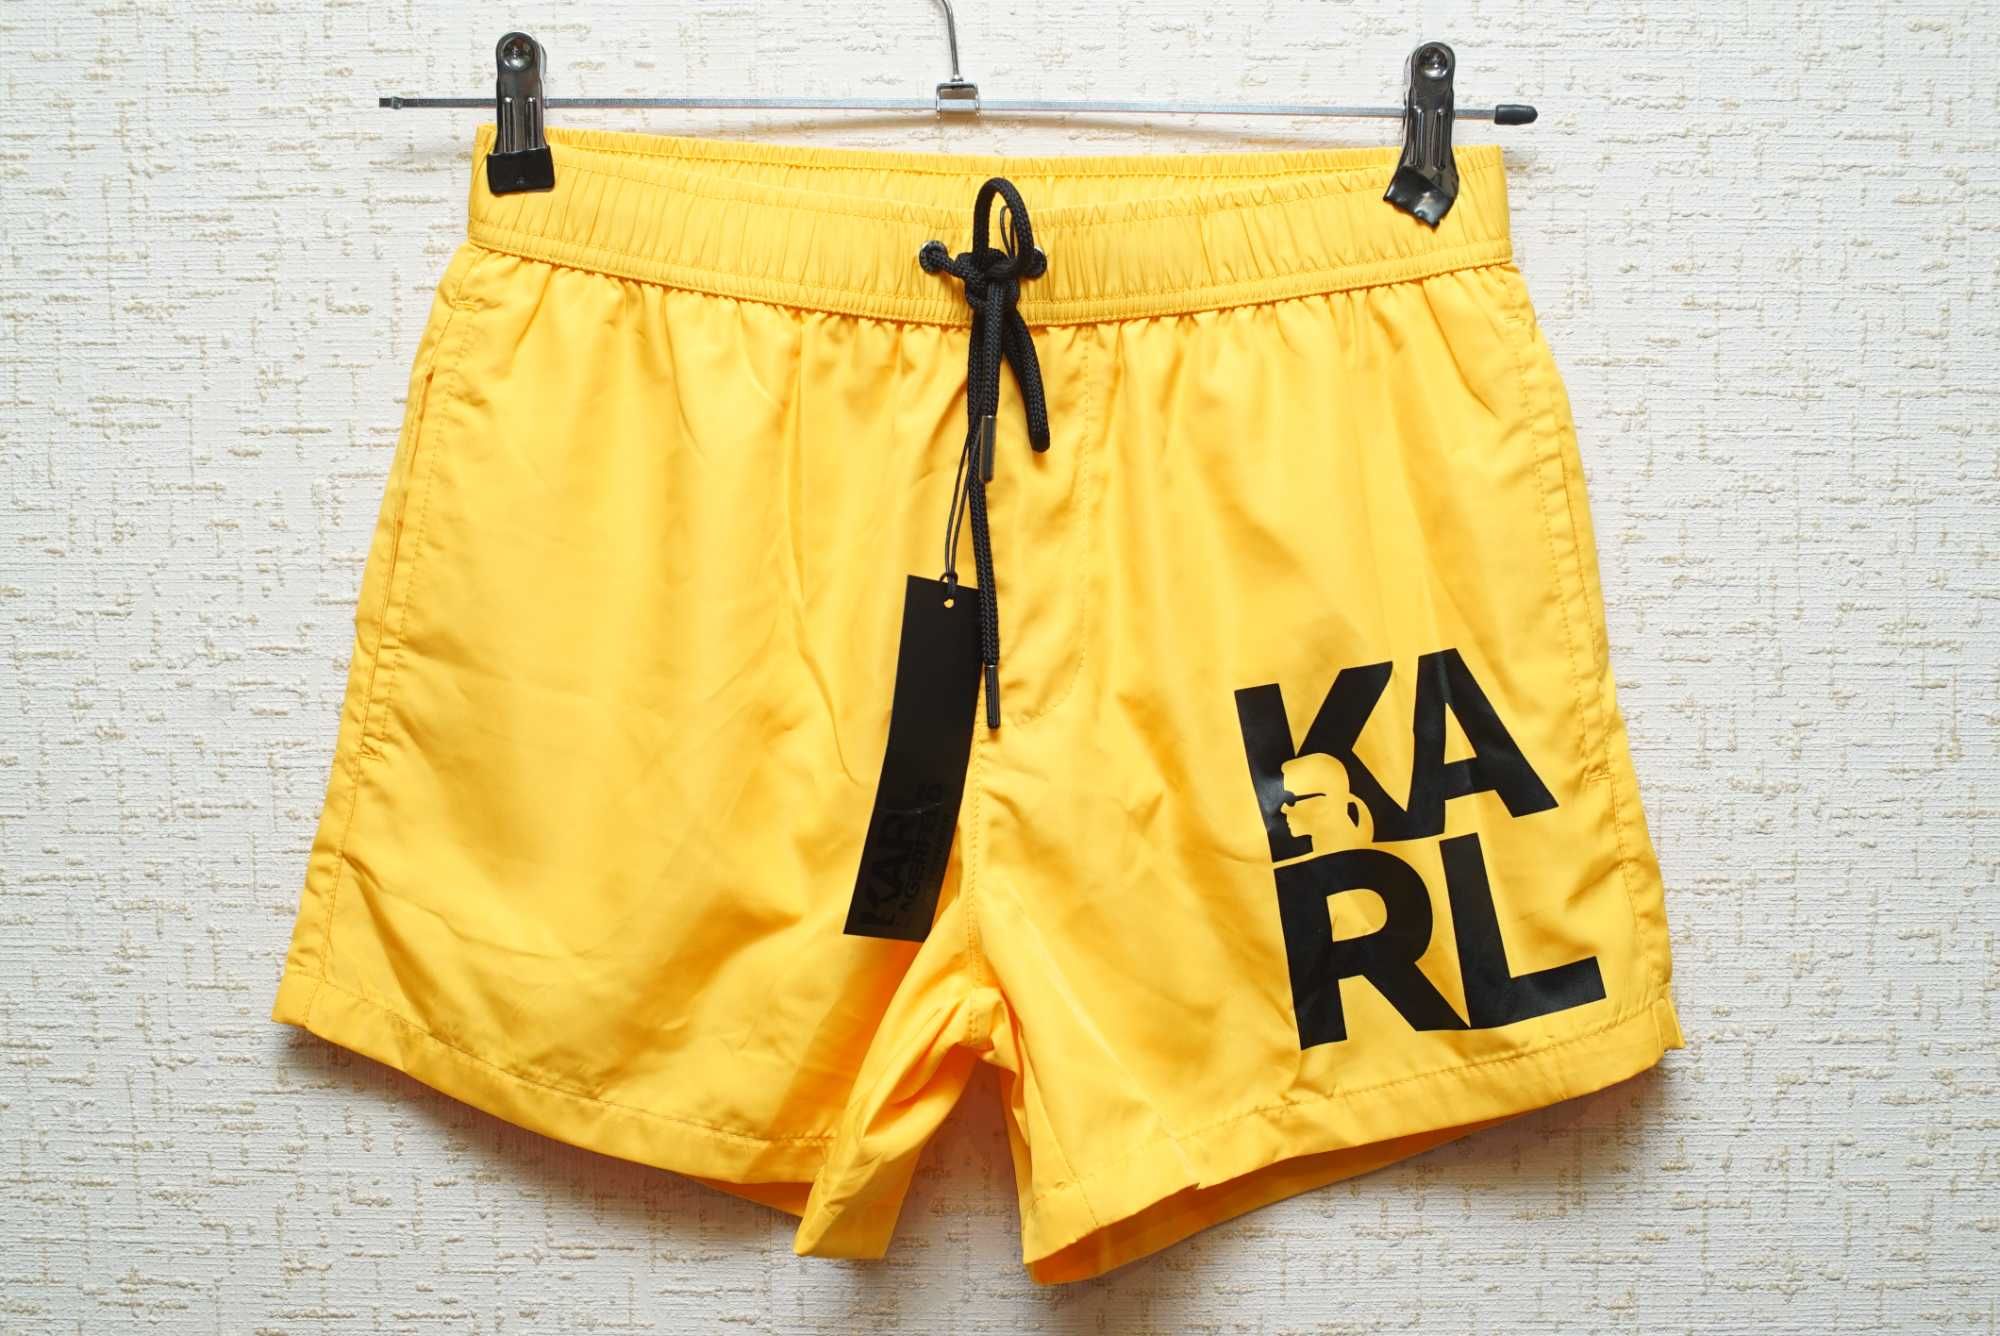 Мужские плавательные шорты KARL LAGERFELD желтого цвета.